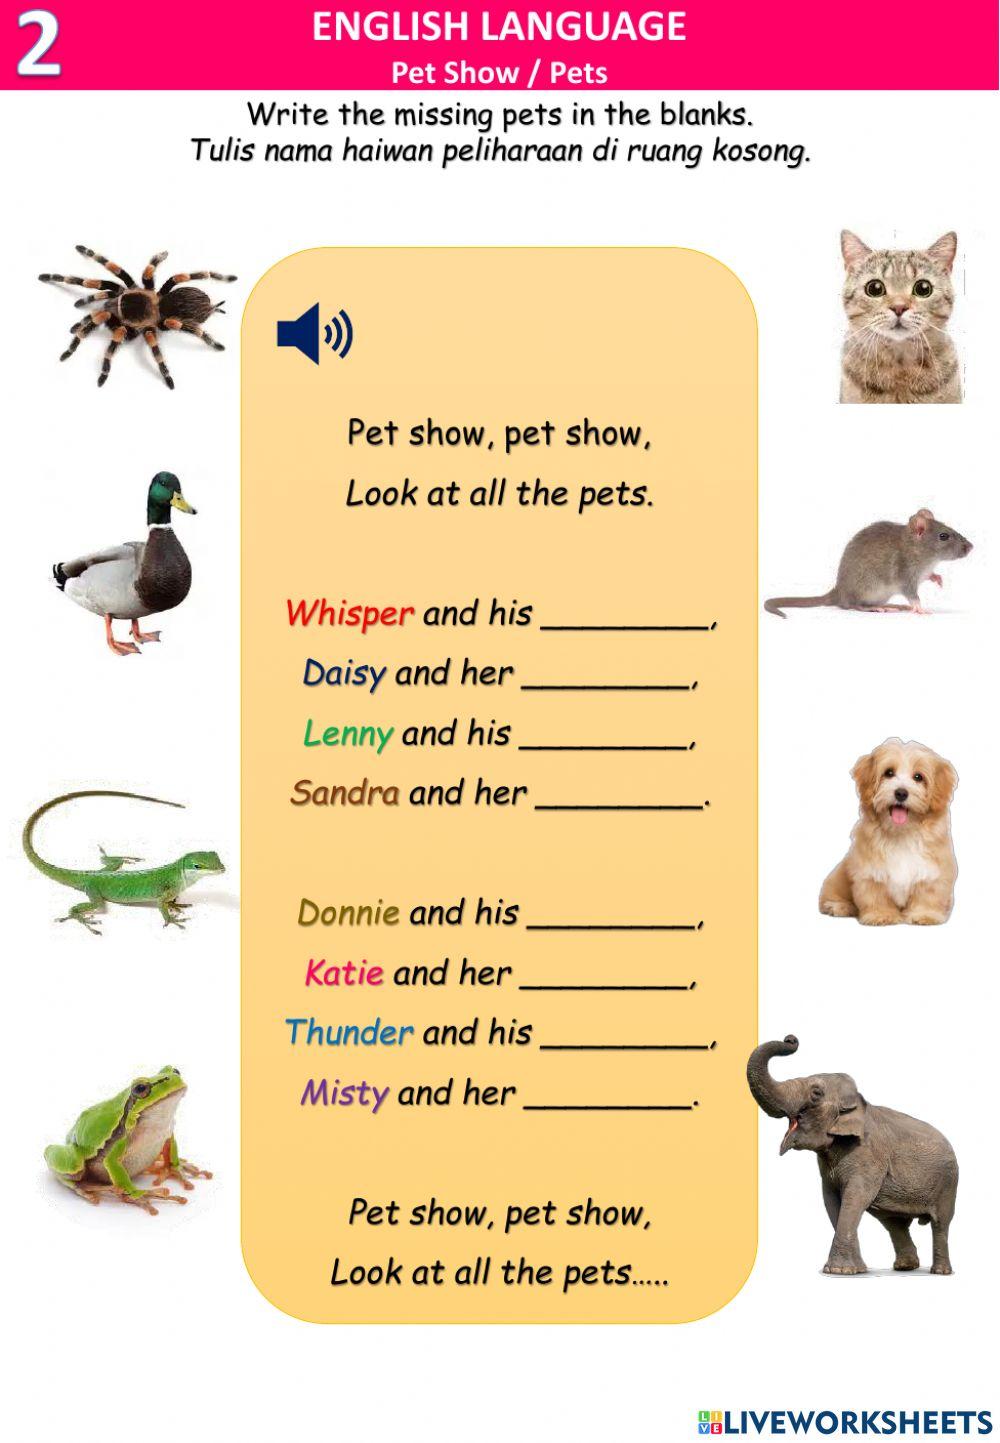 Pet show -pets